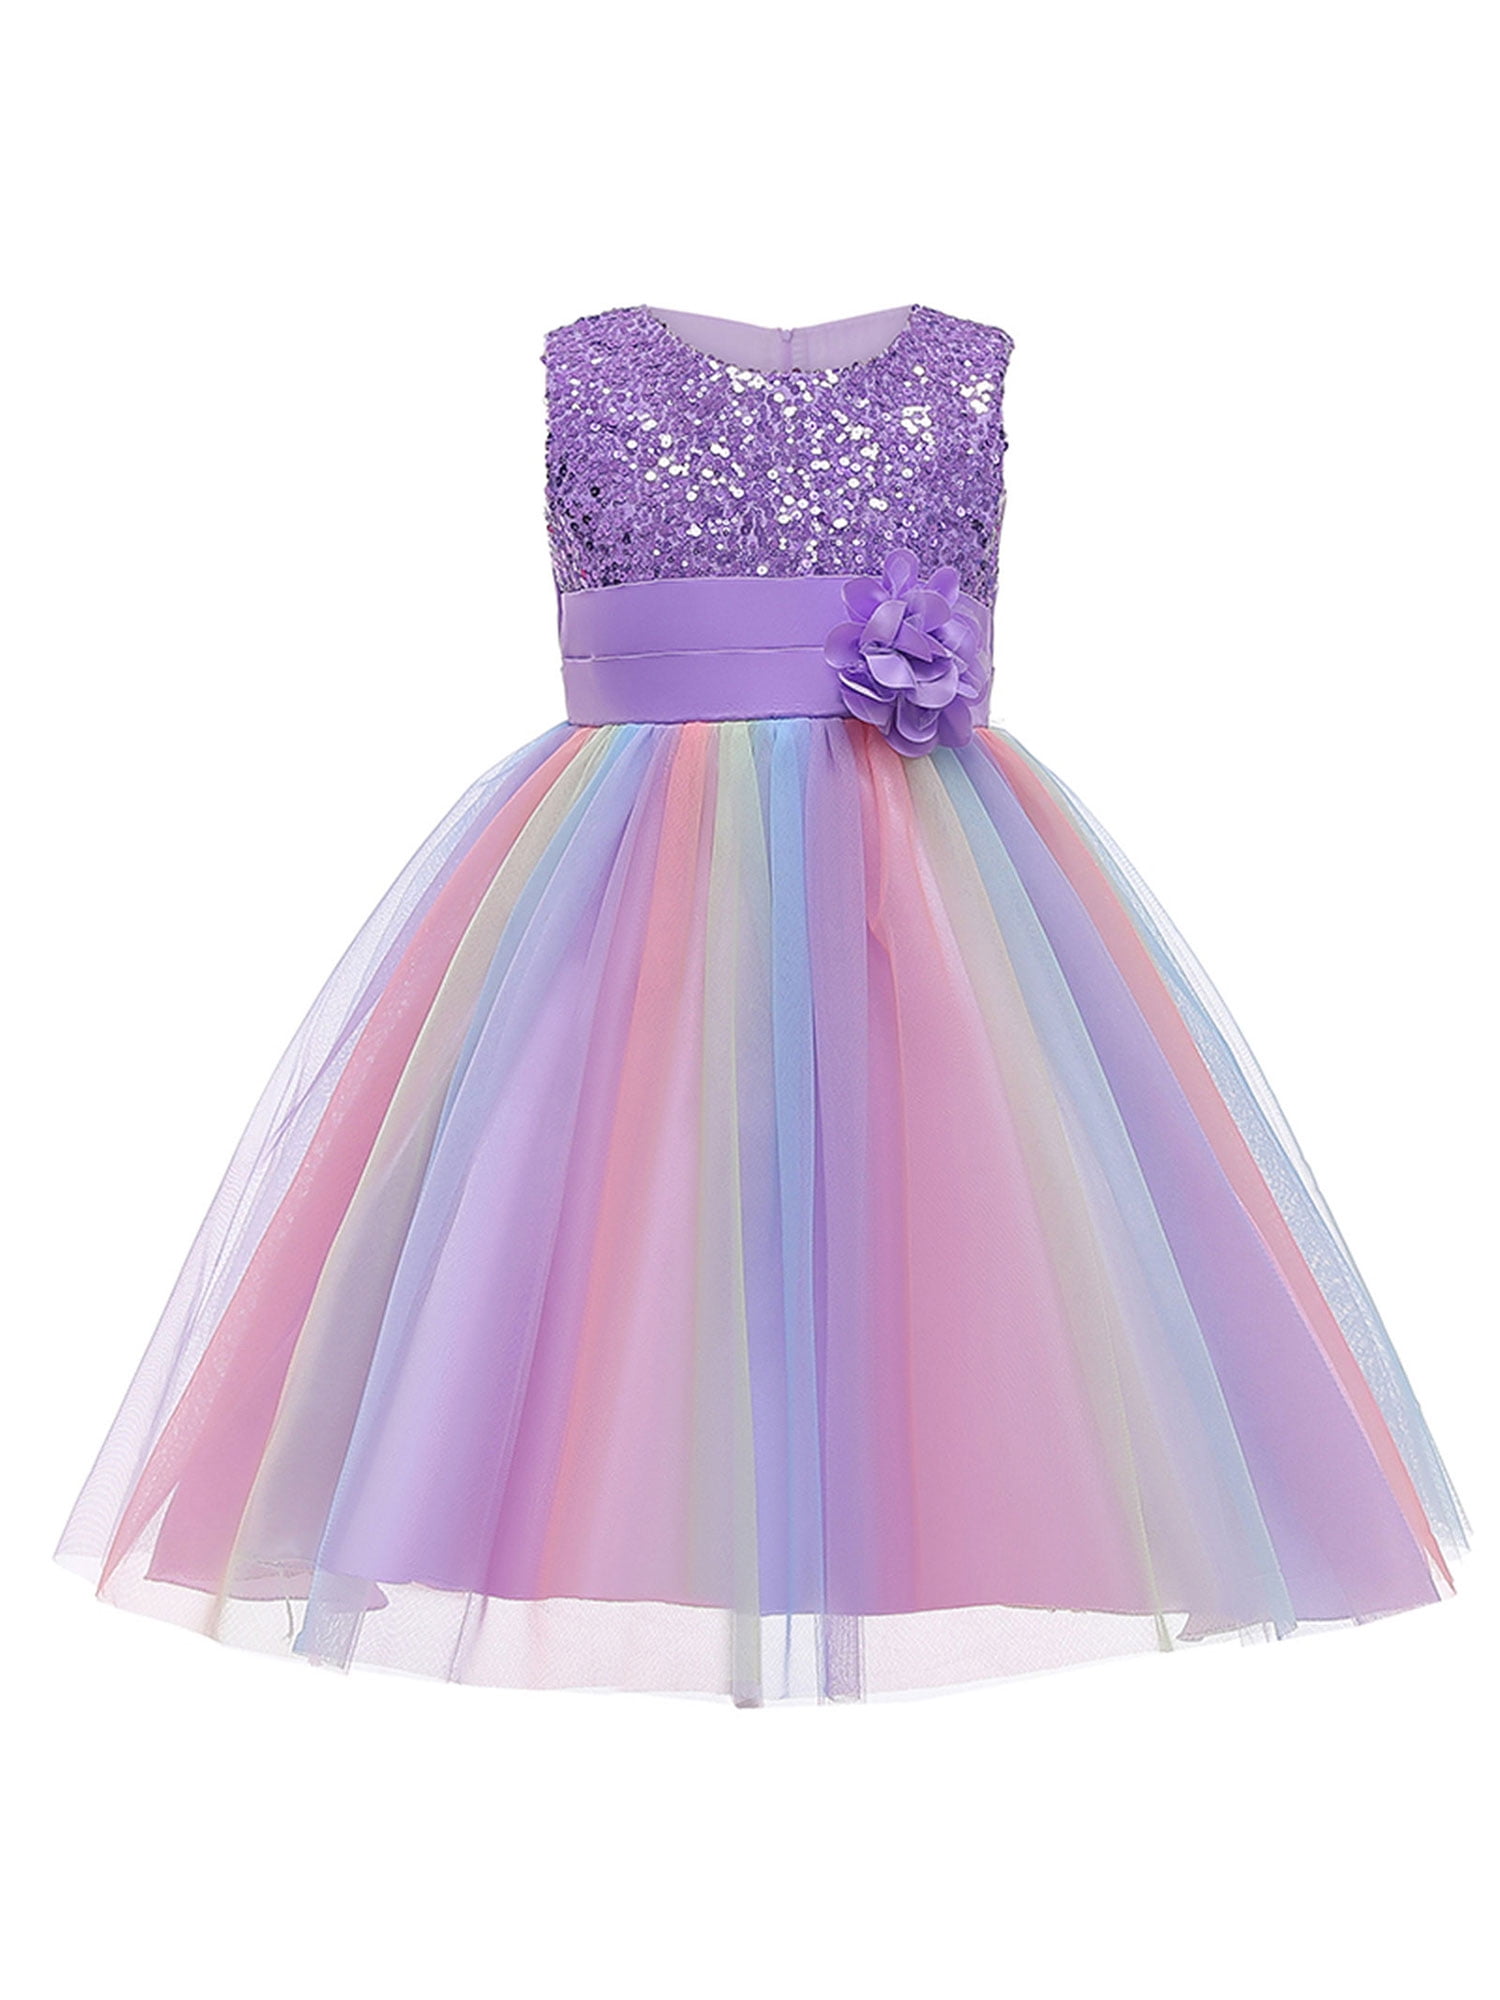 4-9 Years Girls Rainbow Horse Dress Summer Sleeveless Unicorn Ball Clothing 